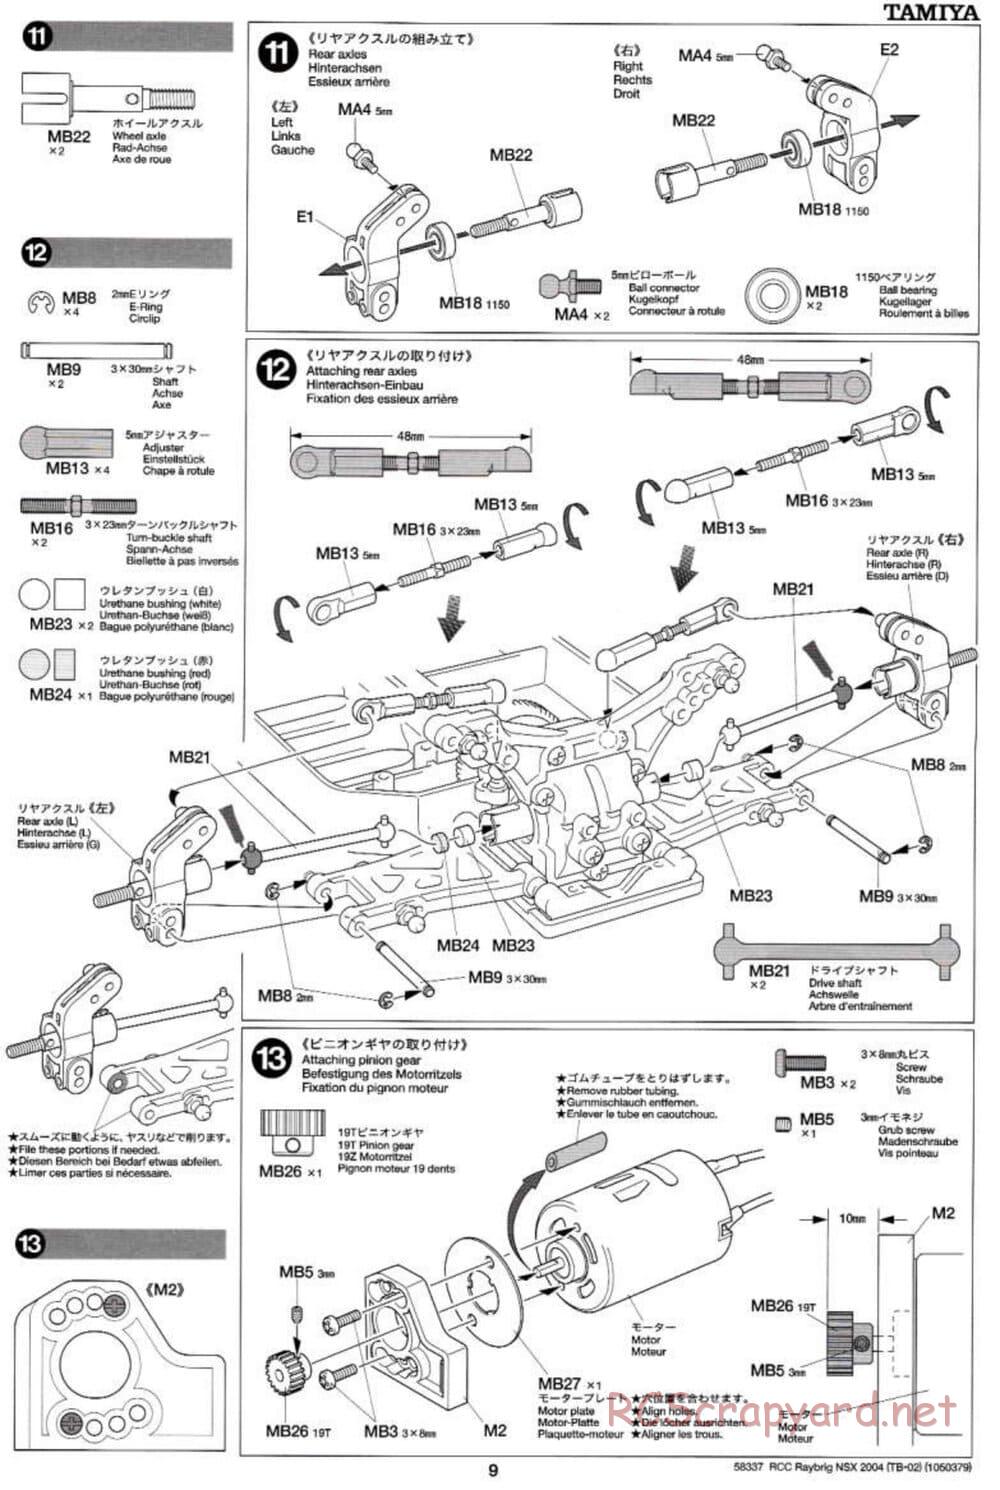 Tamiya - Raybrig NSX 2004 - TB-02 Chassis - Manual - Page 9